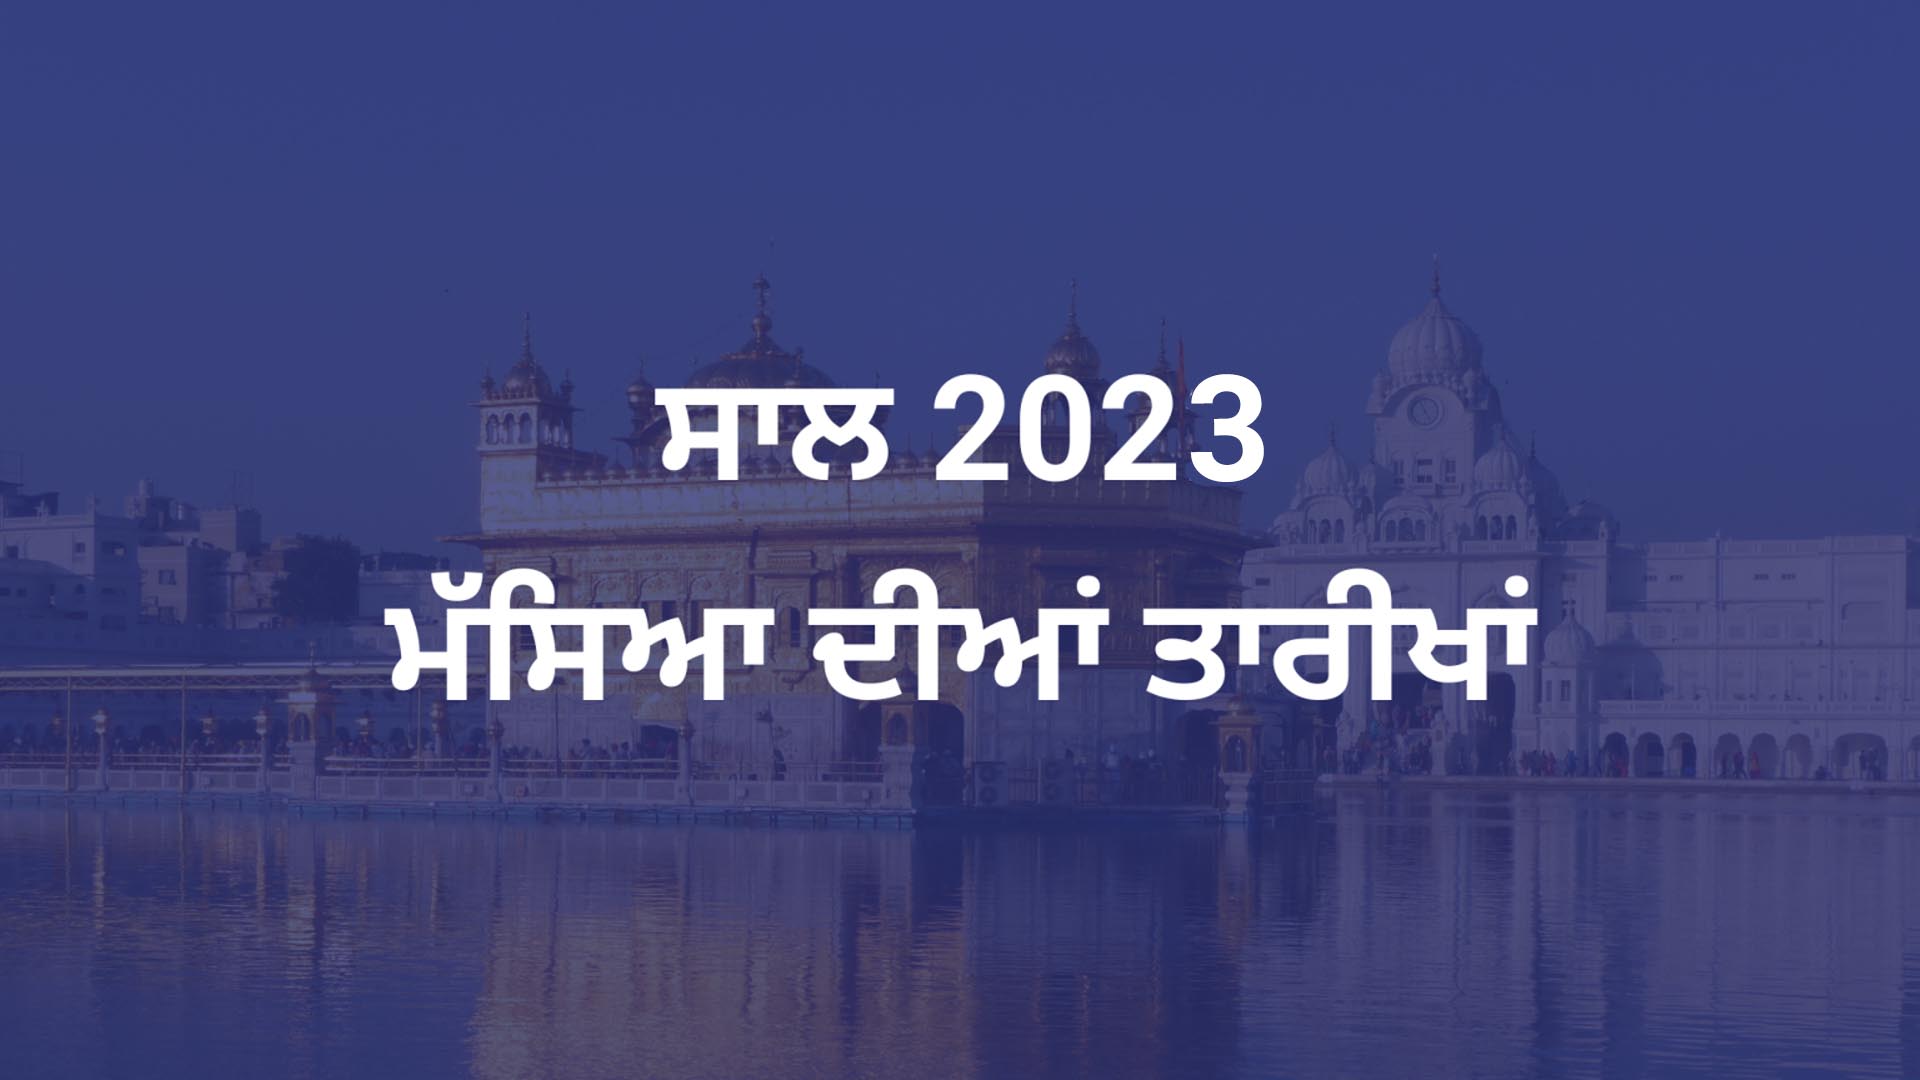 Puranmashi Dates 2023